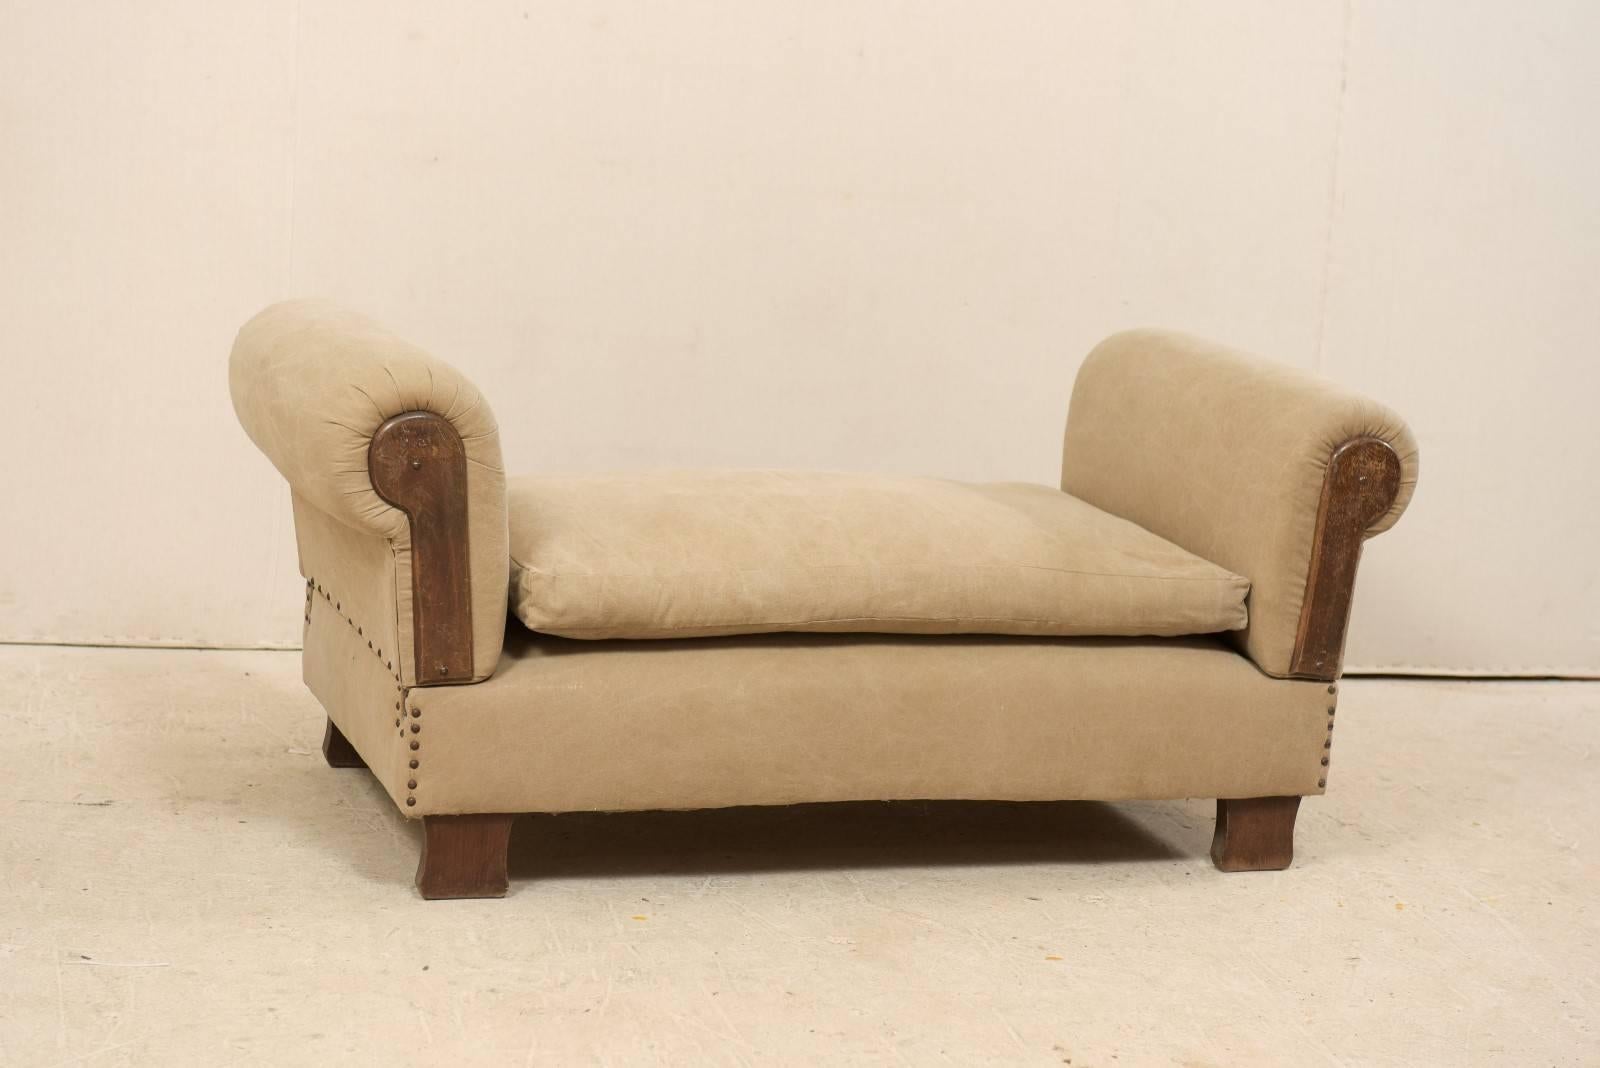 Ein französisches Tageslichtbett aus den 1920er-1930er Jahren. Dieses antike französische Sofa hat an beiden Enden Armlehnen im Drop-Style, die, wenn sie ausgezogen werden, die Bank in eine Liege oder ein Daybed verwandeln. Die Armlehnen haben